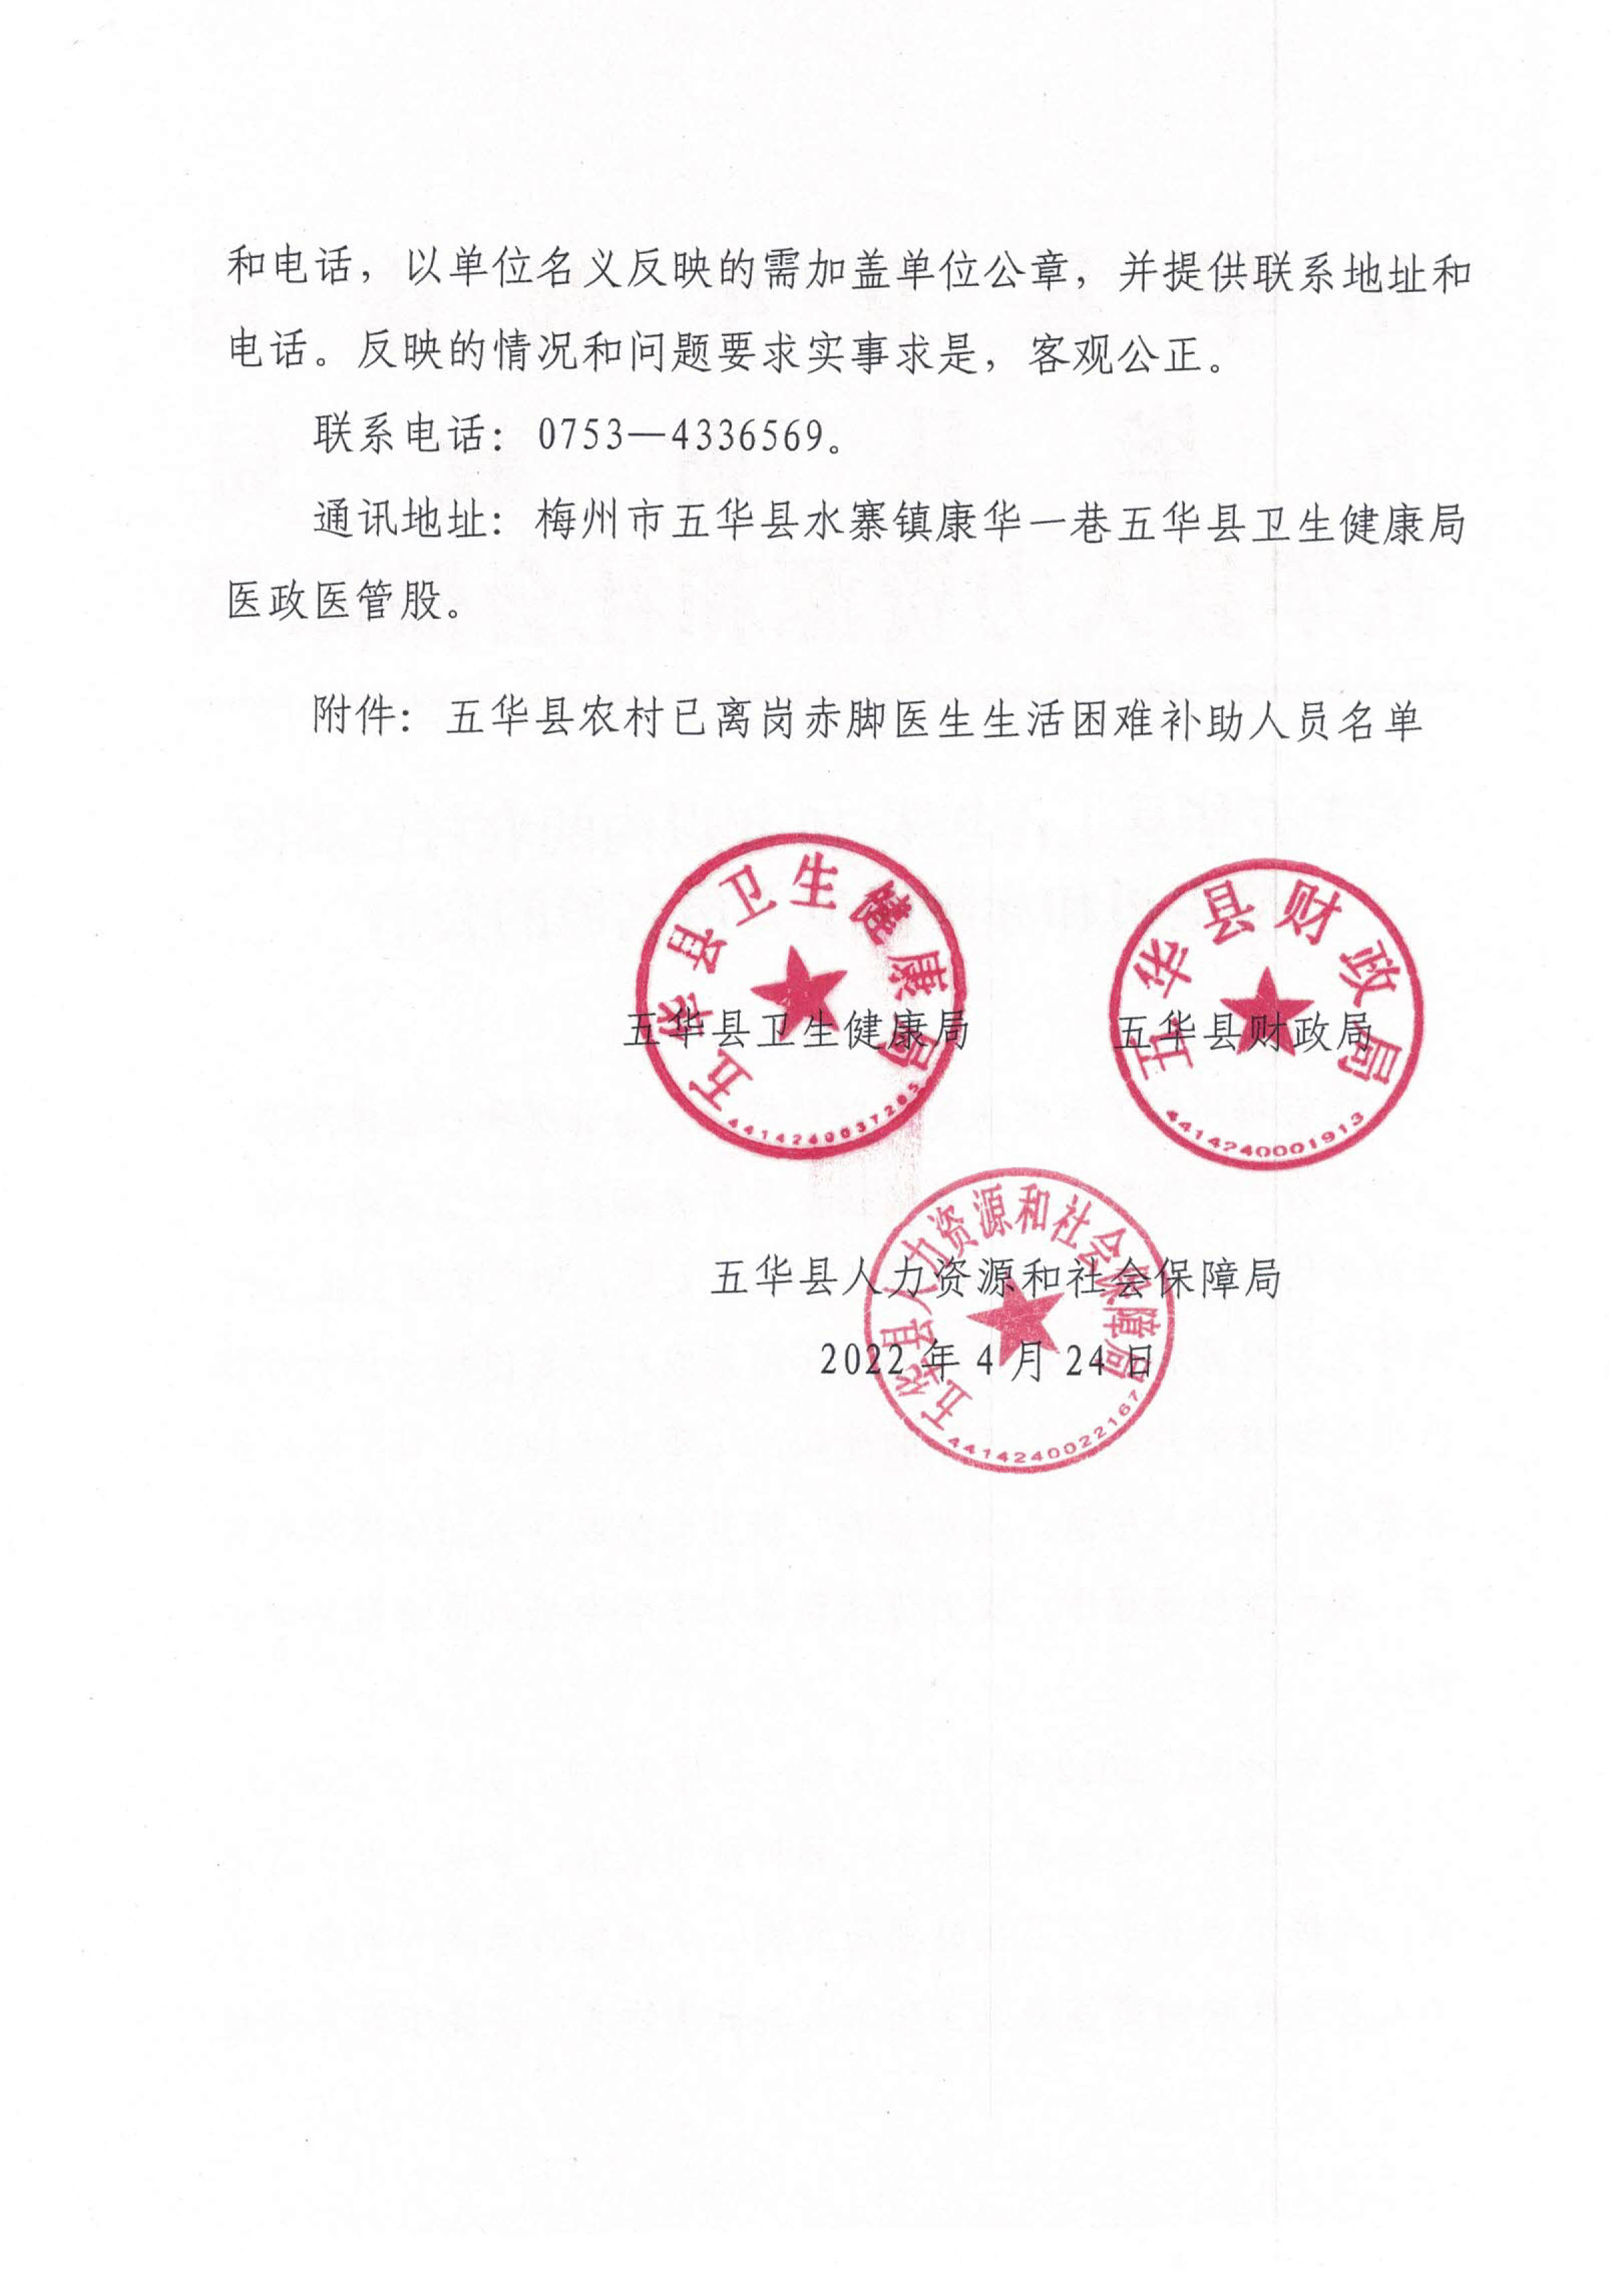 关于五华县工作年限10年以内的农村已离岗接生员和赤脚医生人员名单的公示(1)_2.jpg